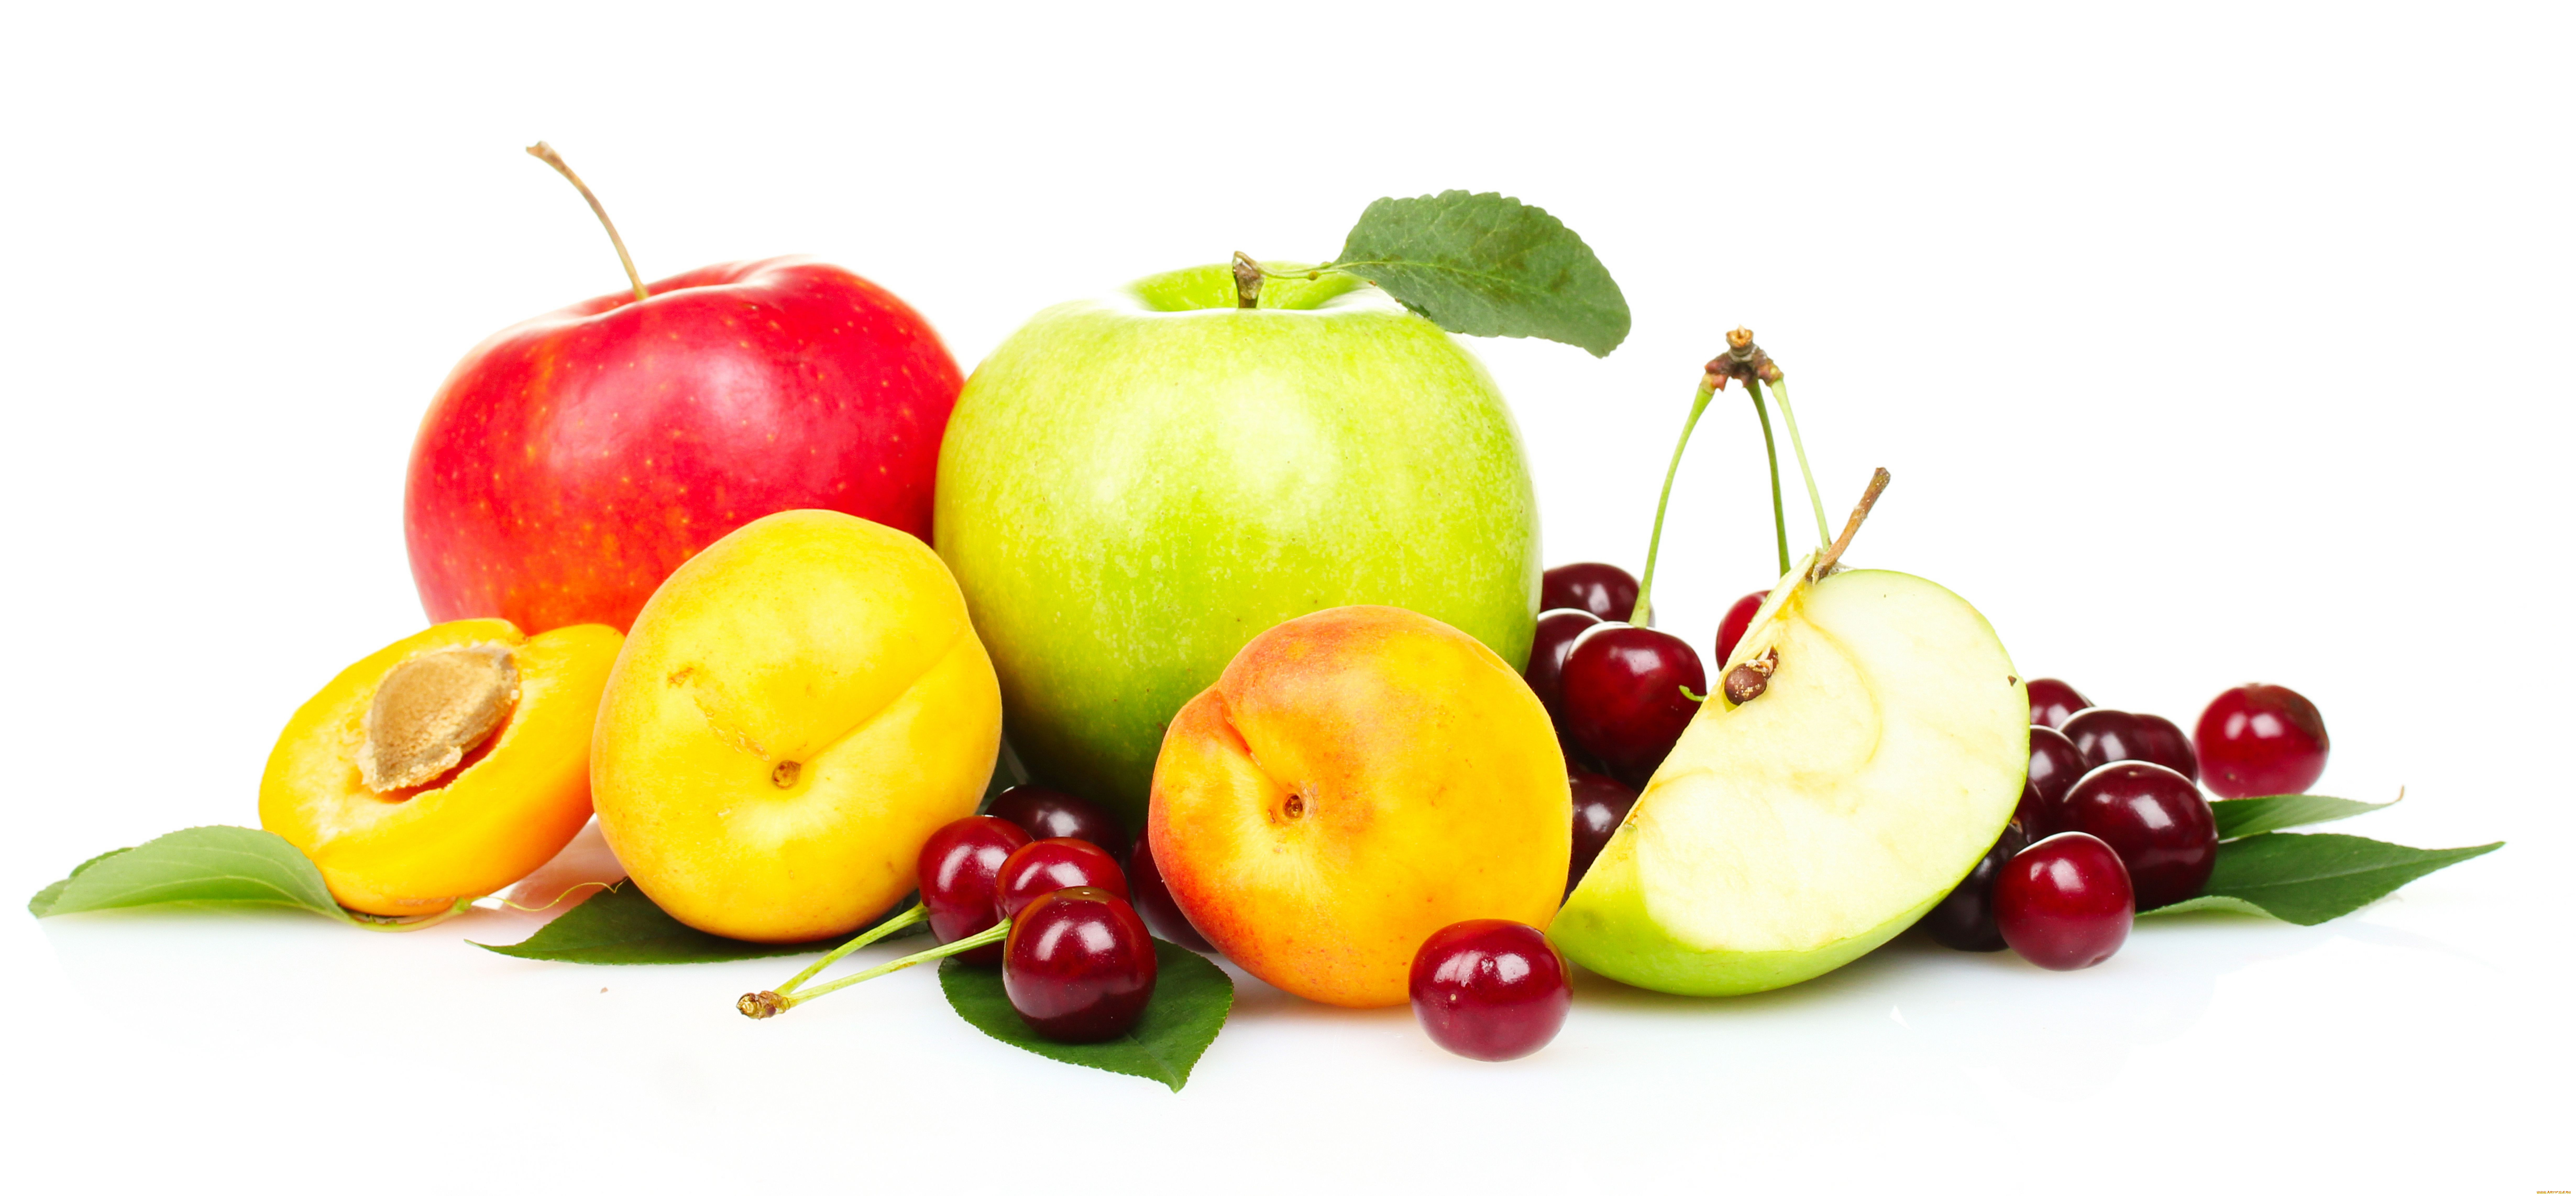 еда, фрукты, ягоды, яблоки, персики, черешня